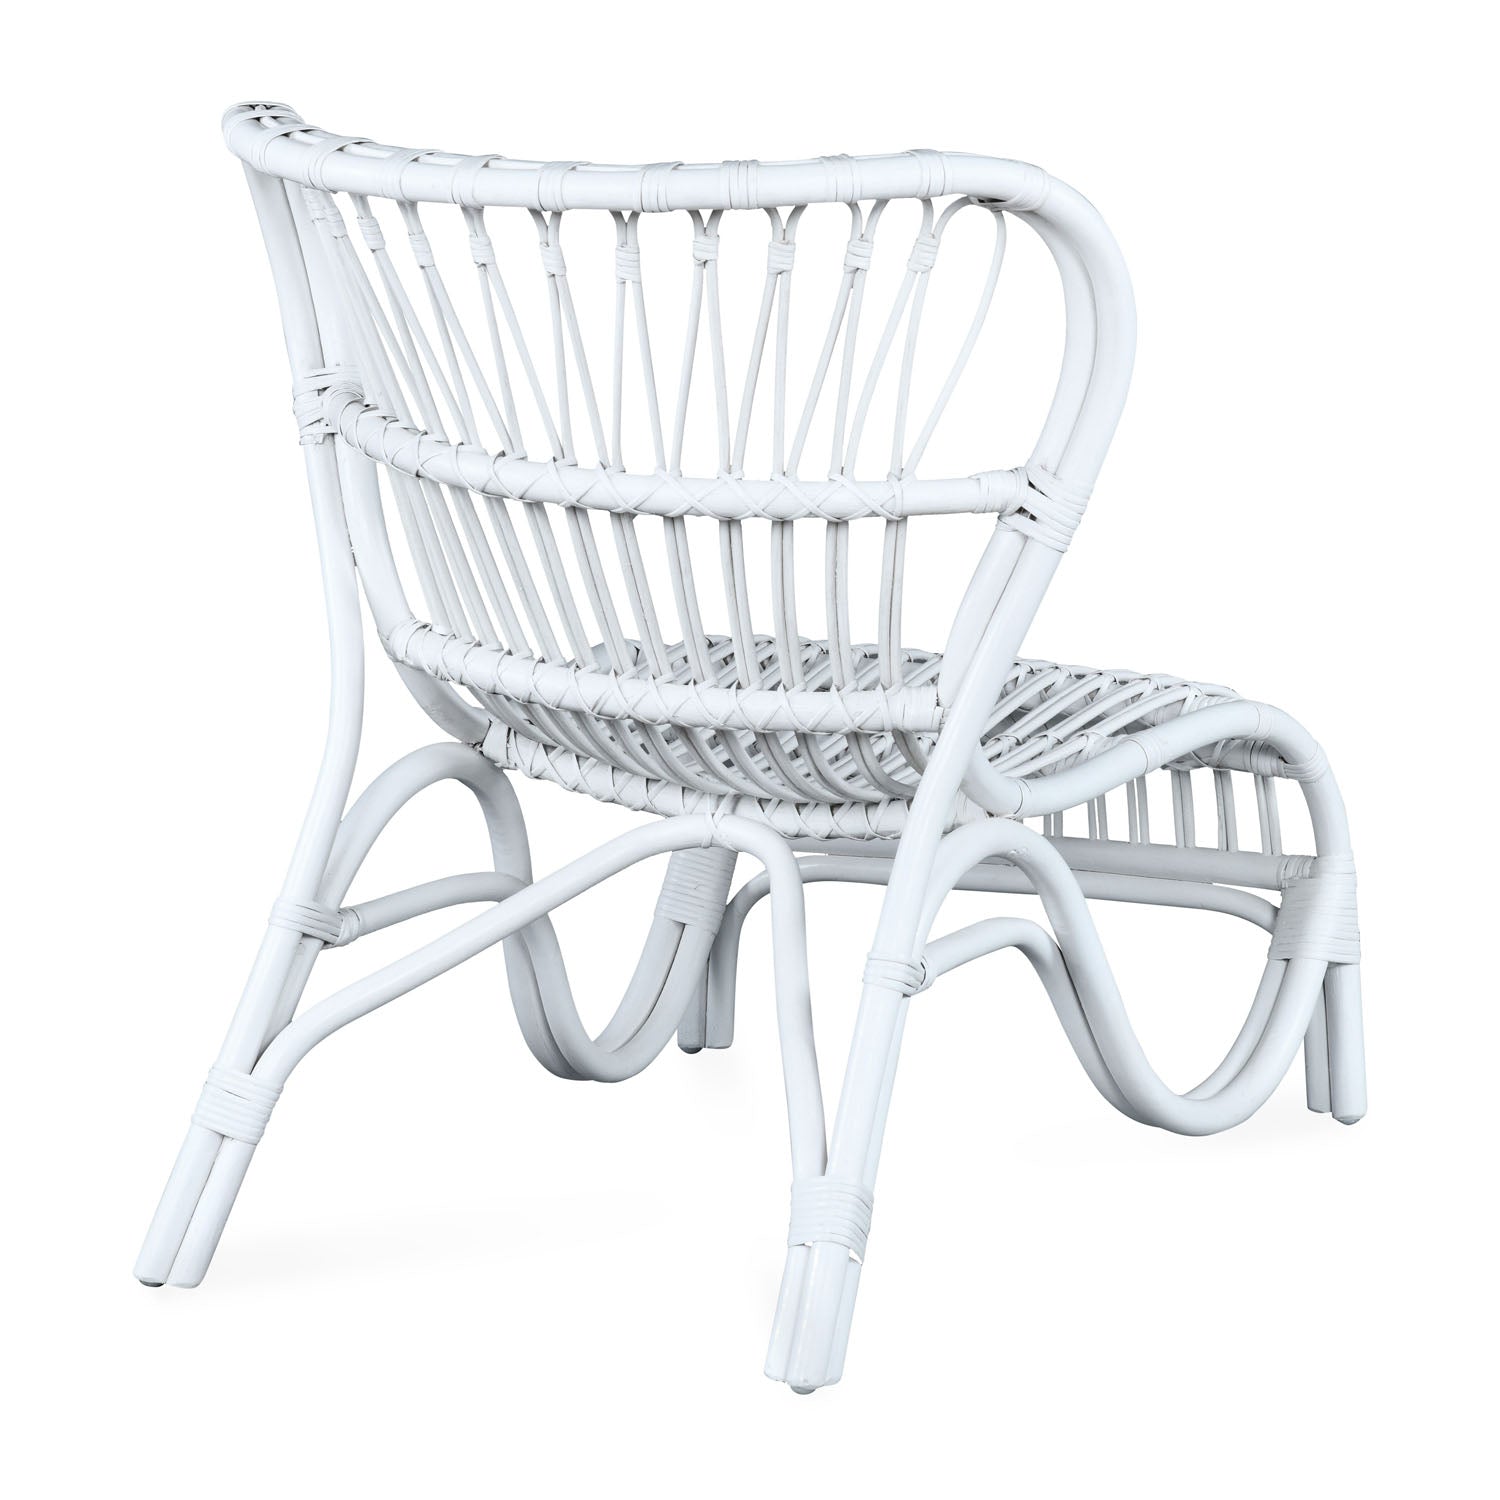 Magy Arm Chair (White)